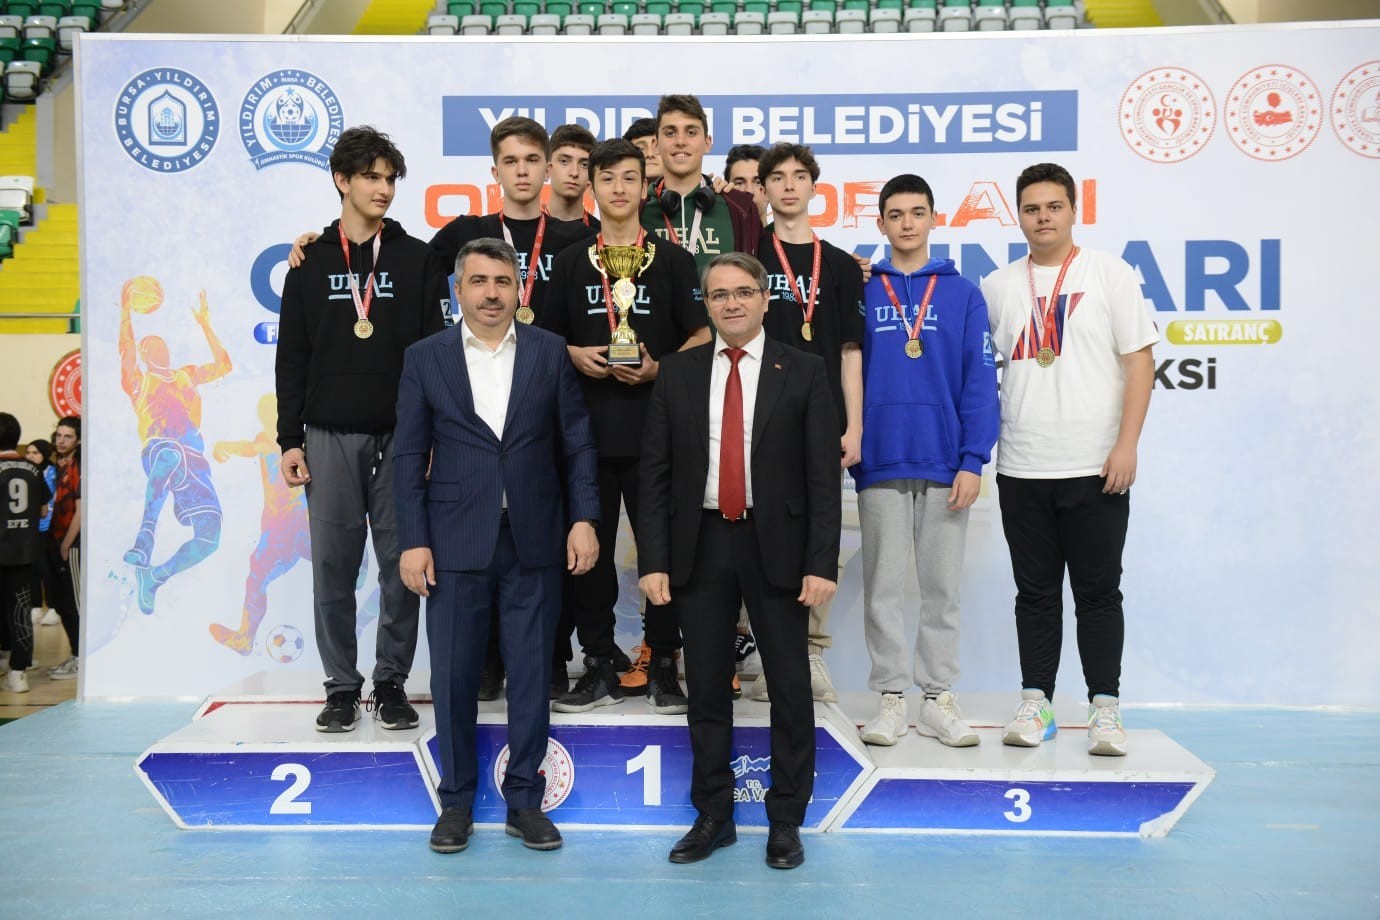 Yıldırım Belediyesi Okul Sporları Şenliği tamamlandı